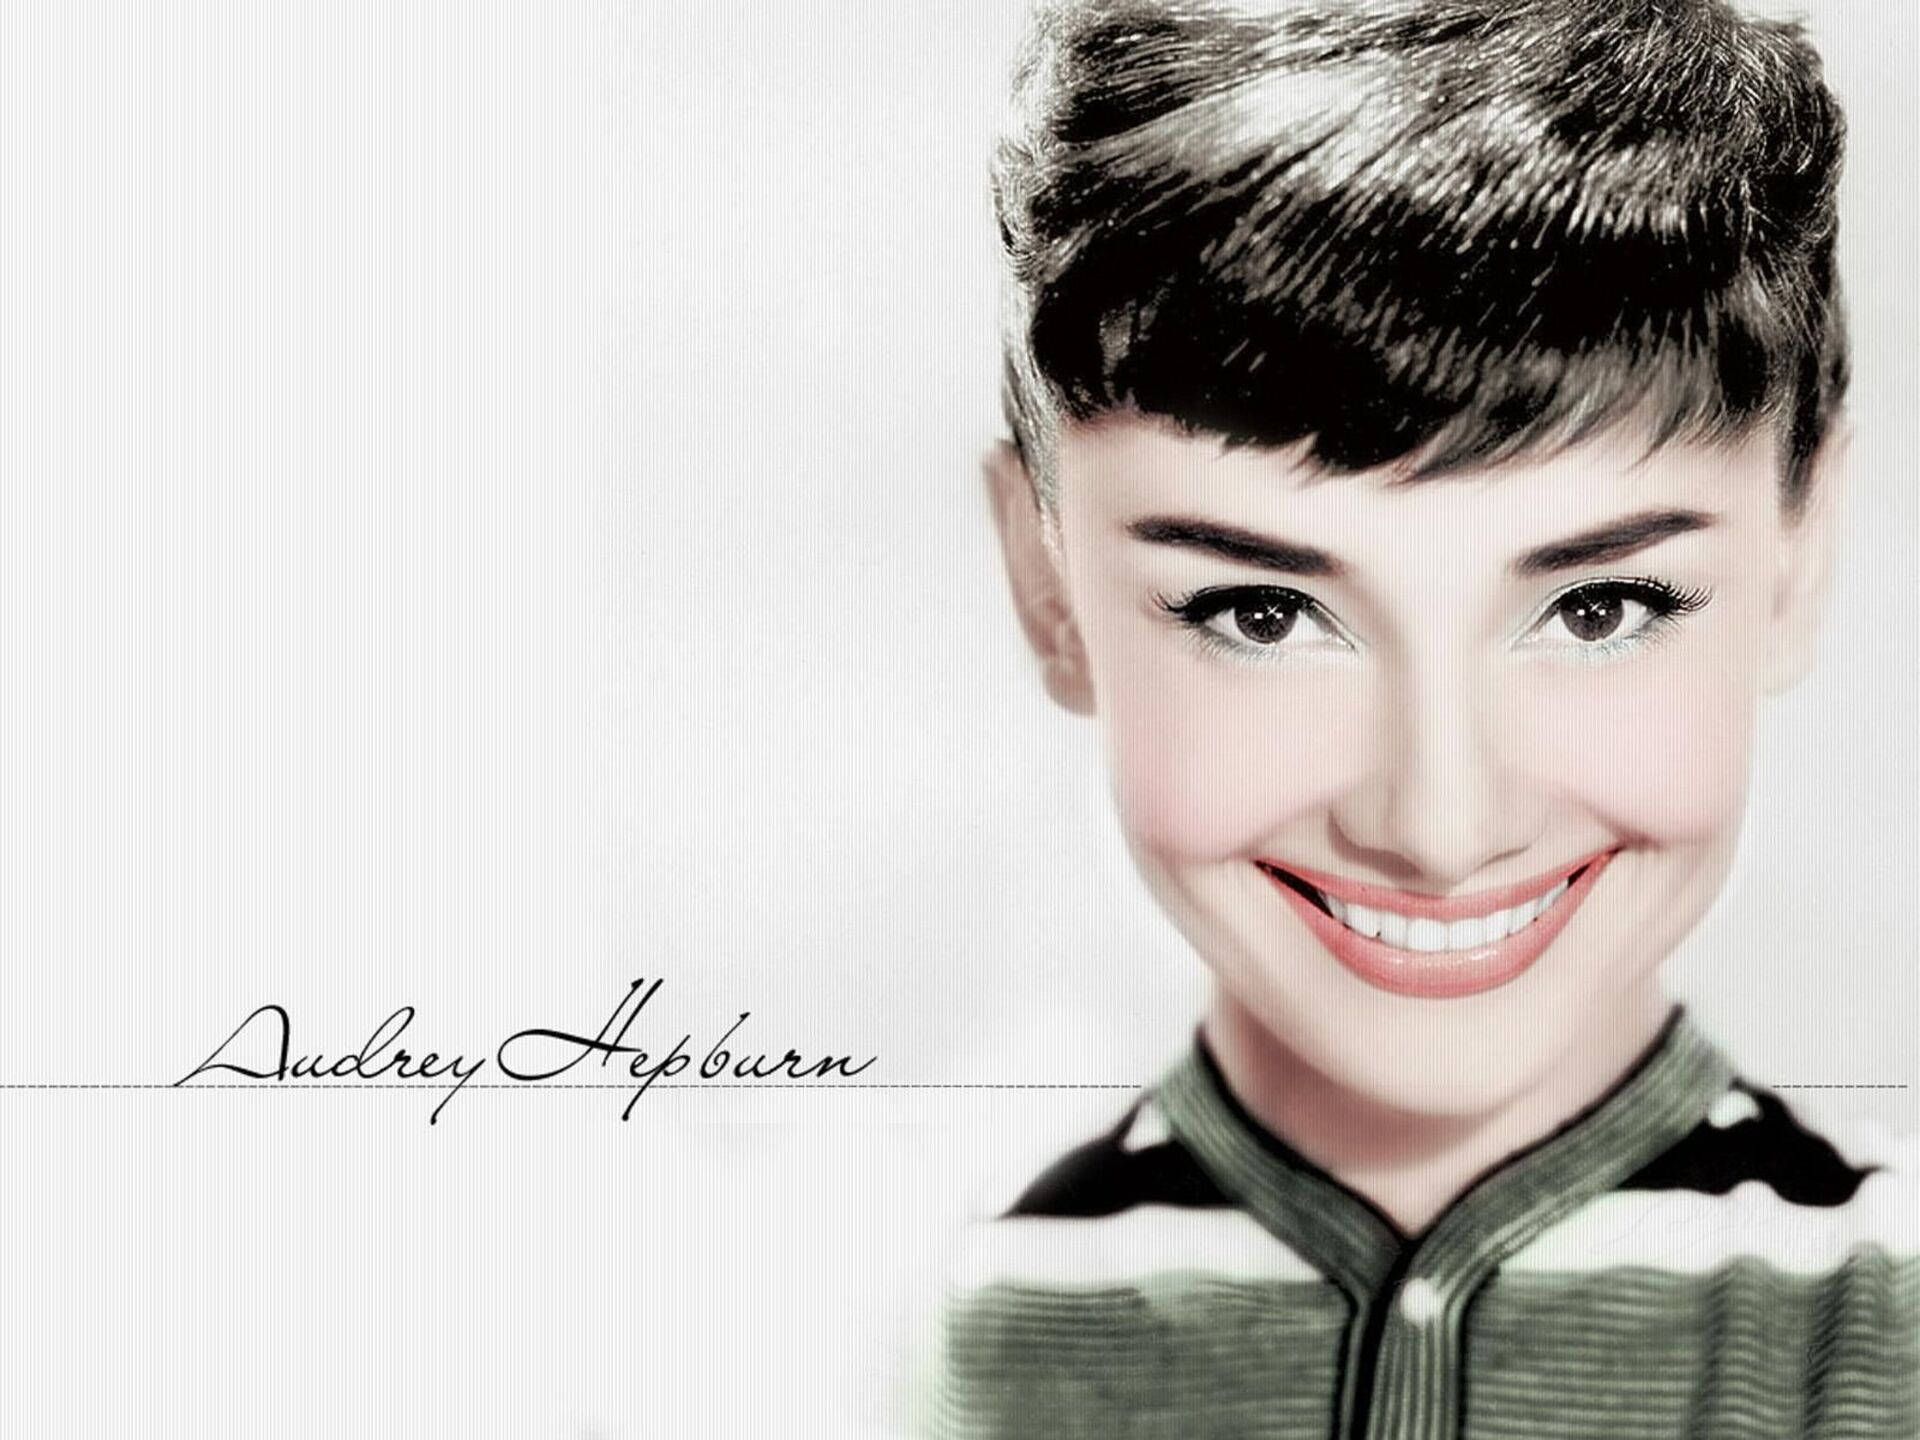 Smiling Audrey Hepburn Wallpaper